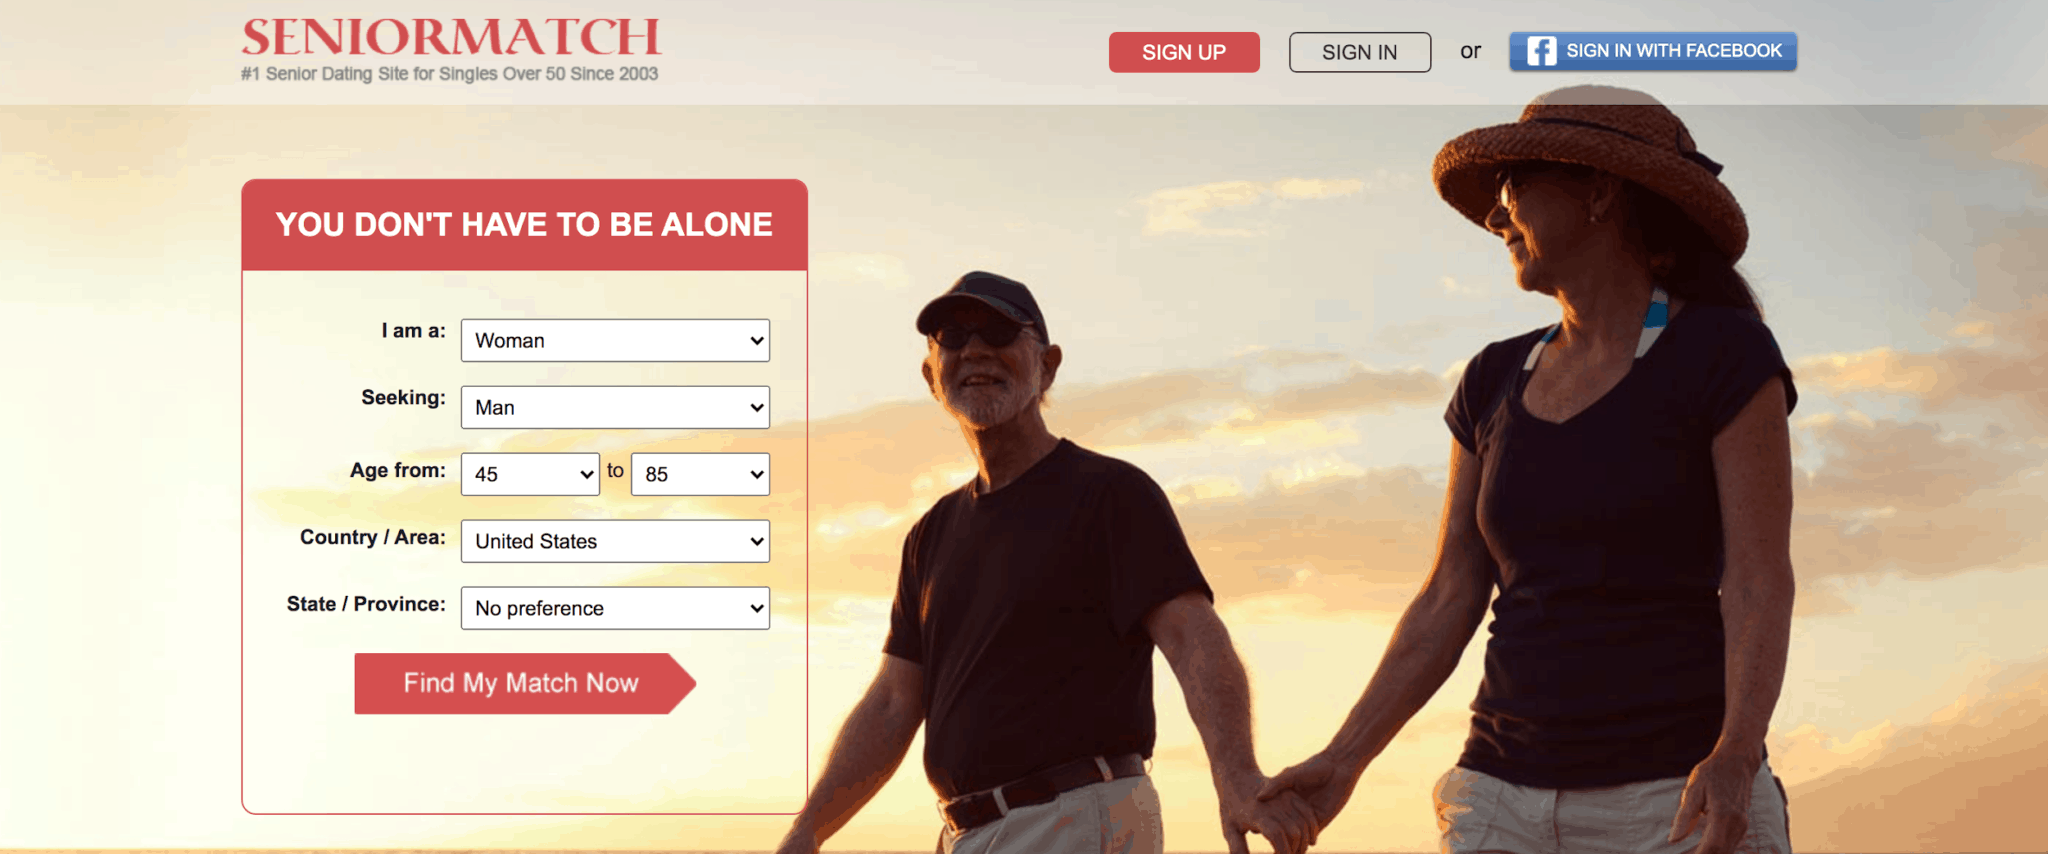 Dating websites for seniors